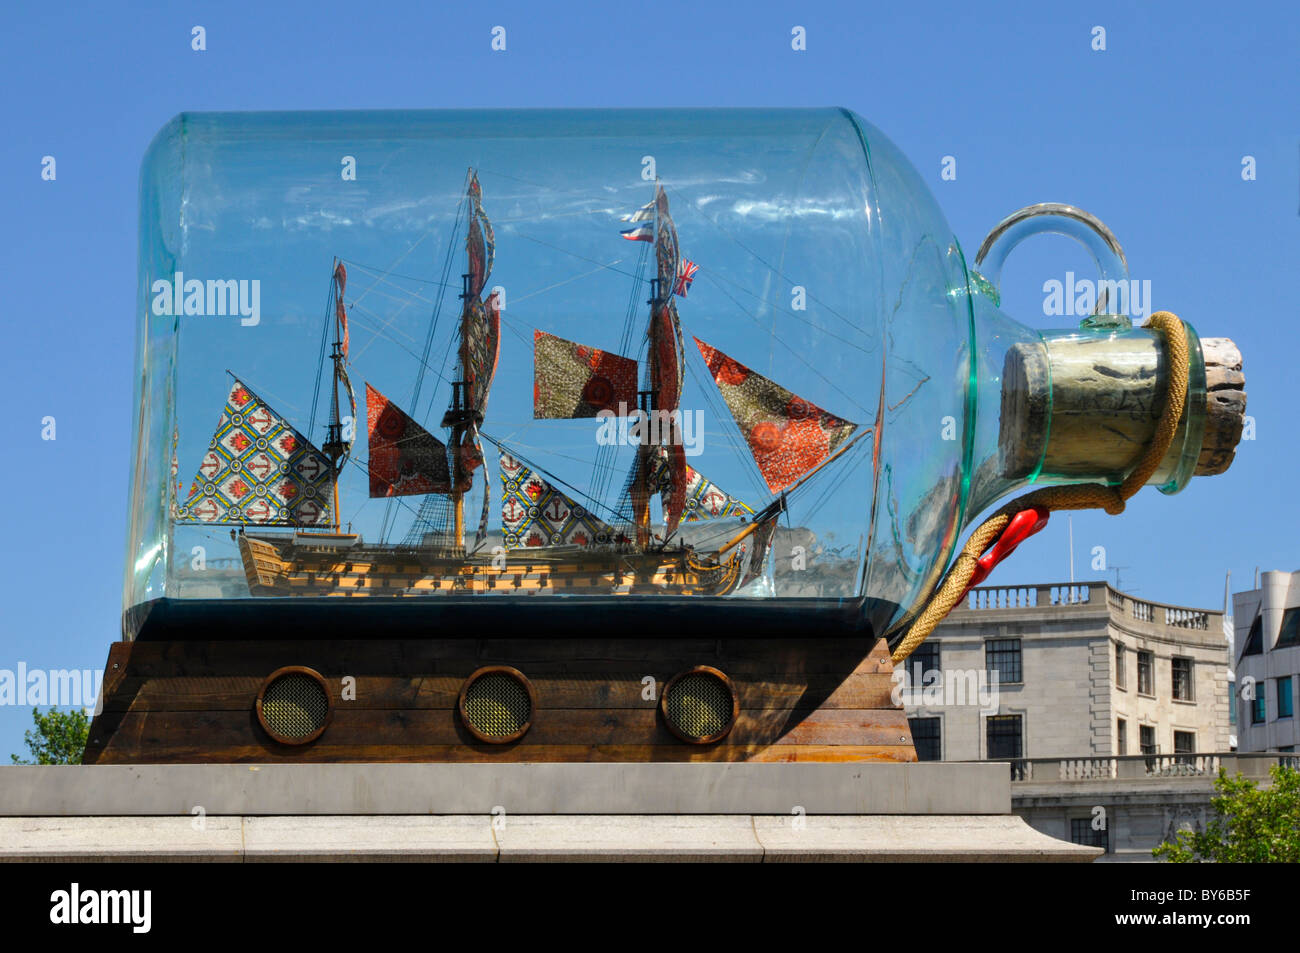 Nahaufnahme des Kunstmodells des Nelsons Flaggschiff Victory in einer Flasche von Yinka Shonibare Kunstwerk auf dem vierten Sockel im Trafalgar Square London England Großbritannien Stockfoto